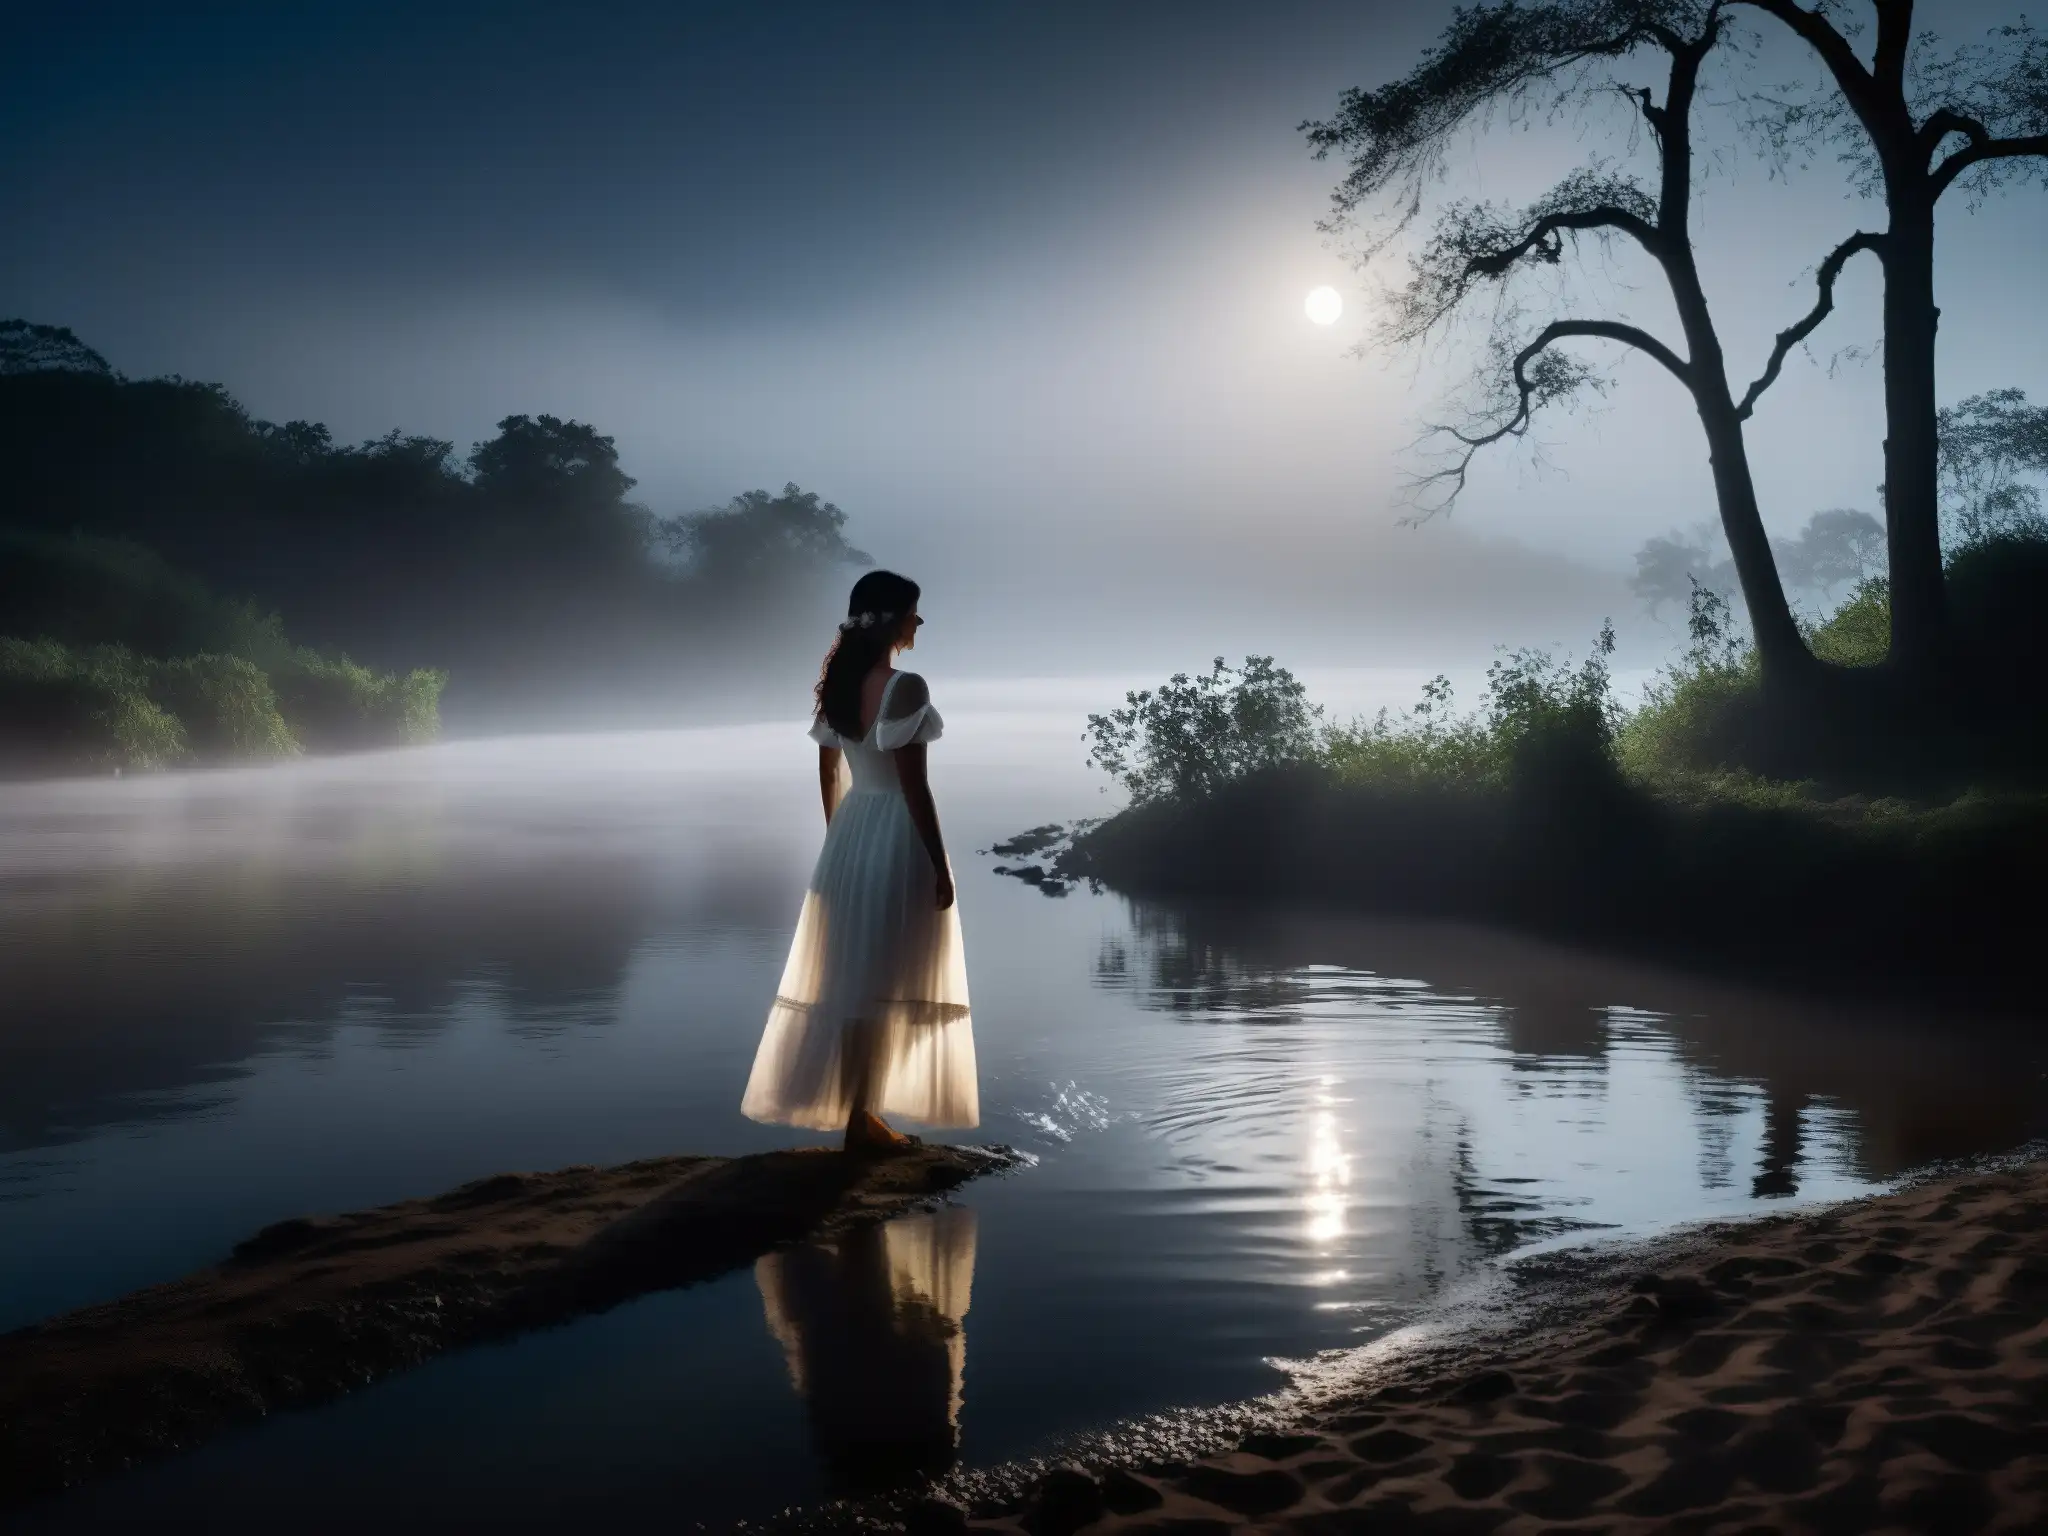 Silueta de mujer en vestido blanco en la orilla del río, evocando la leyenda de La Llorona en una escena misteriosa y sobrenatural